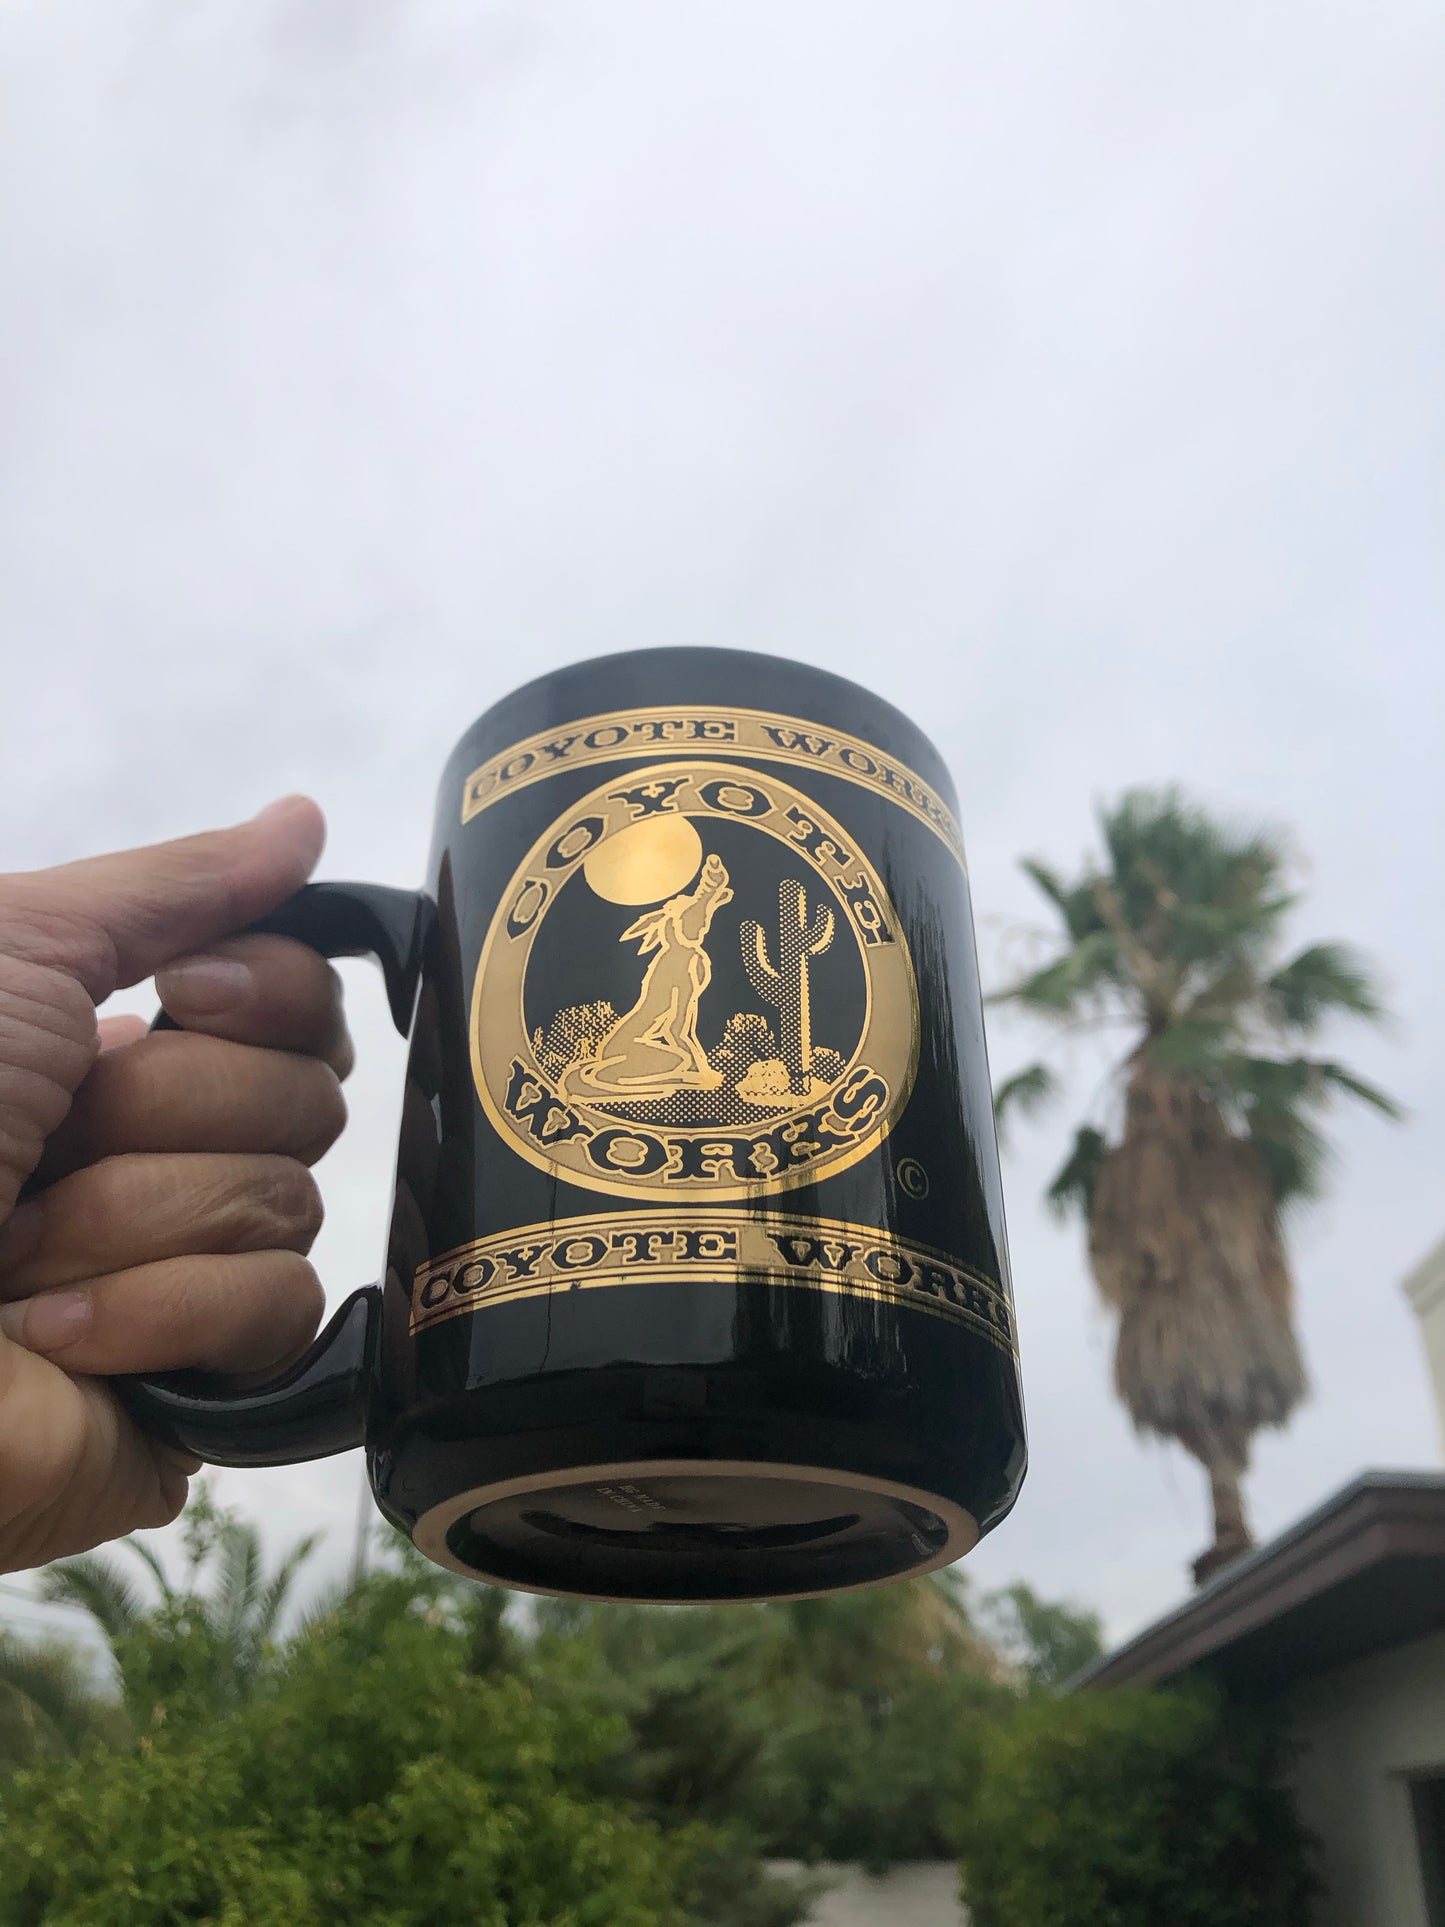 Coyote Works Mug